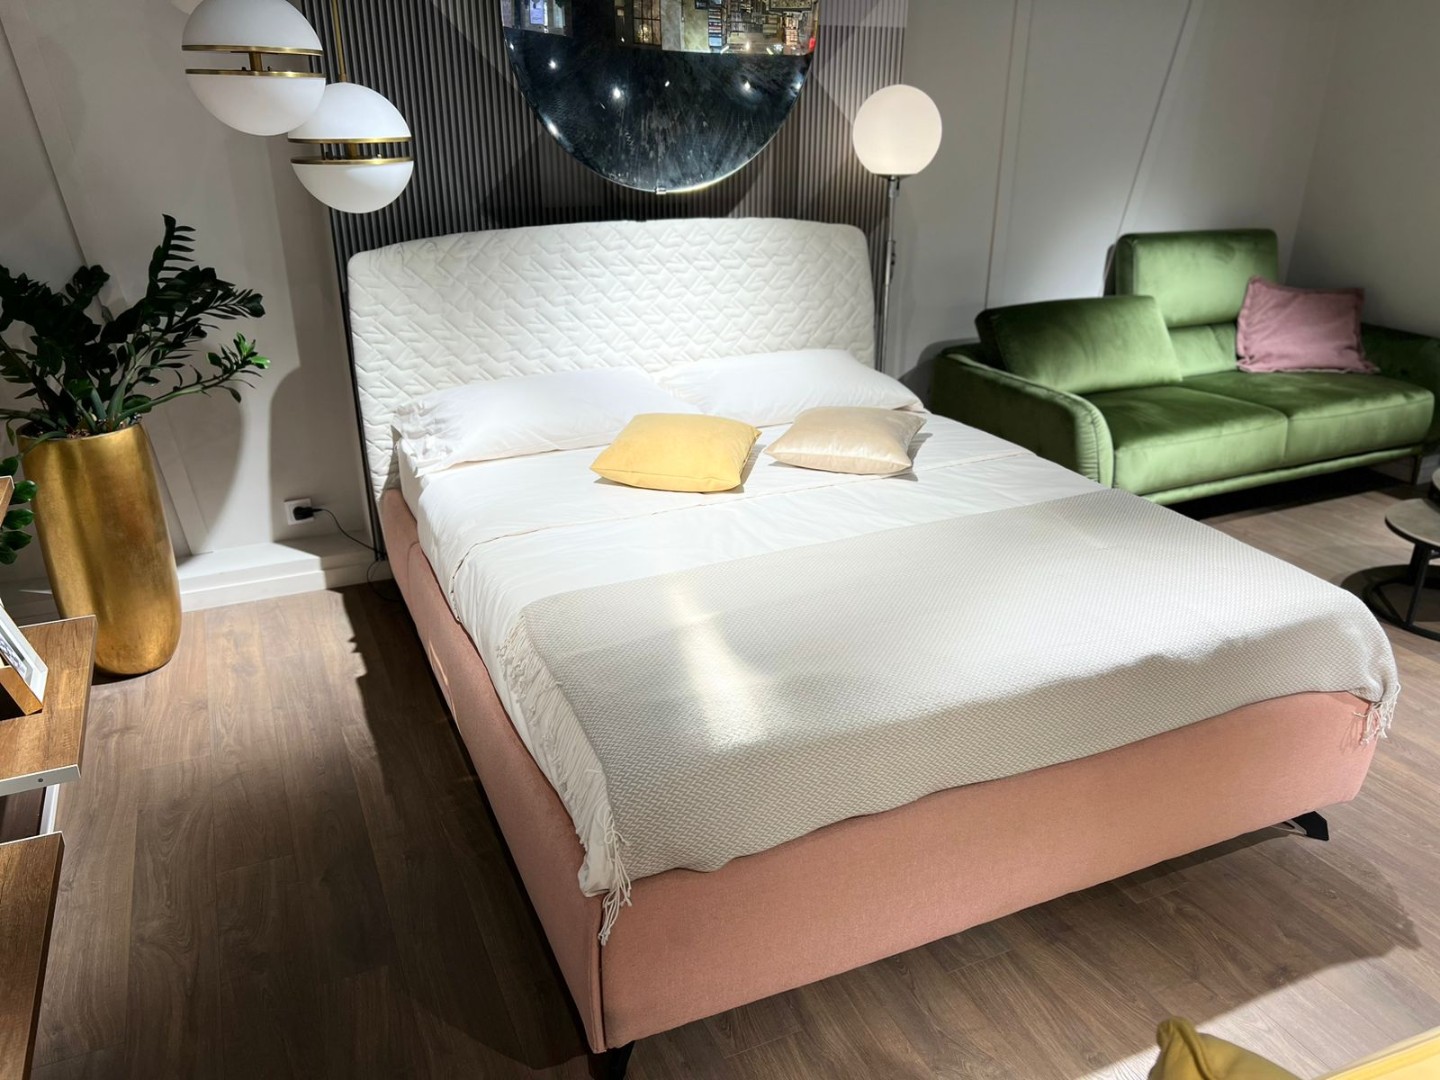 Кровать CAMA для матраса 160X200 — ₽, купить у официального дилера Nicolettihome